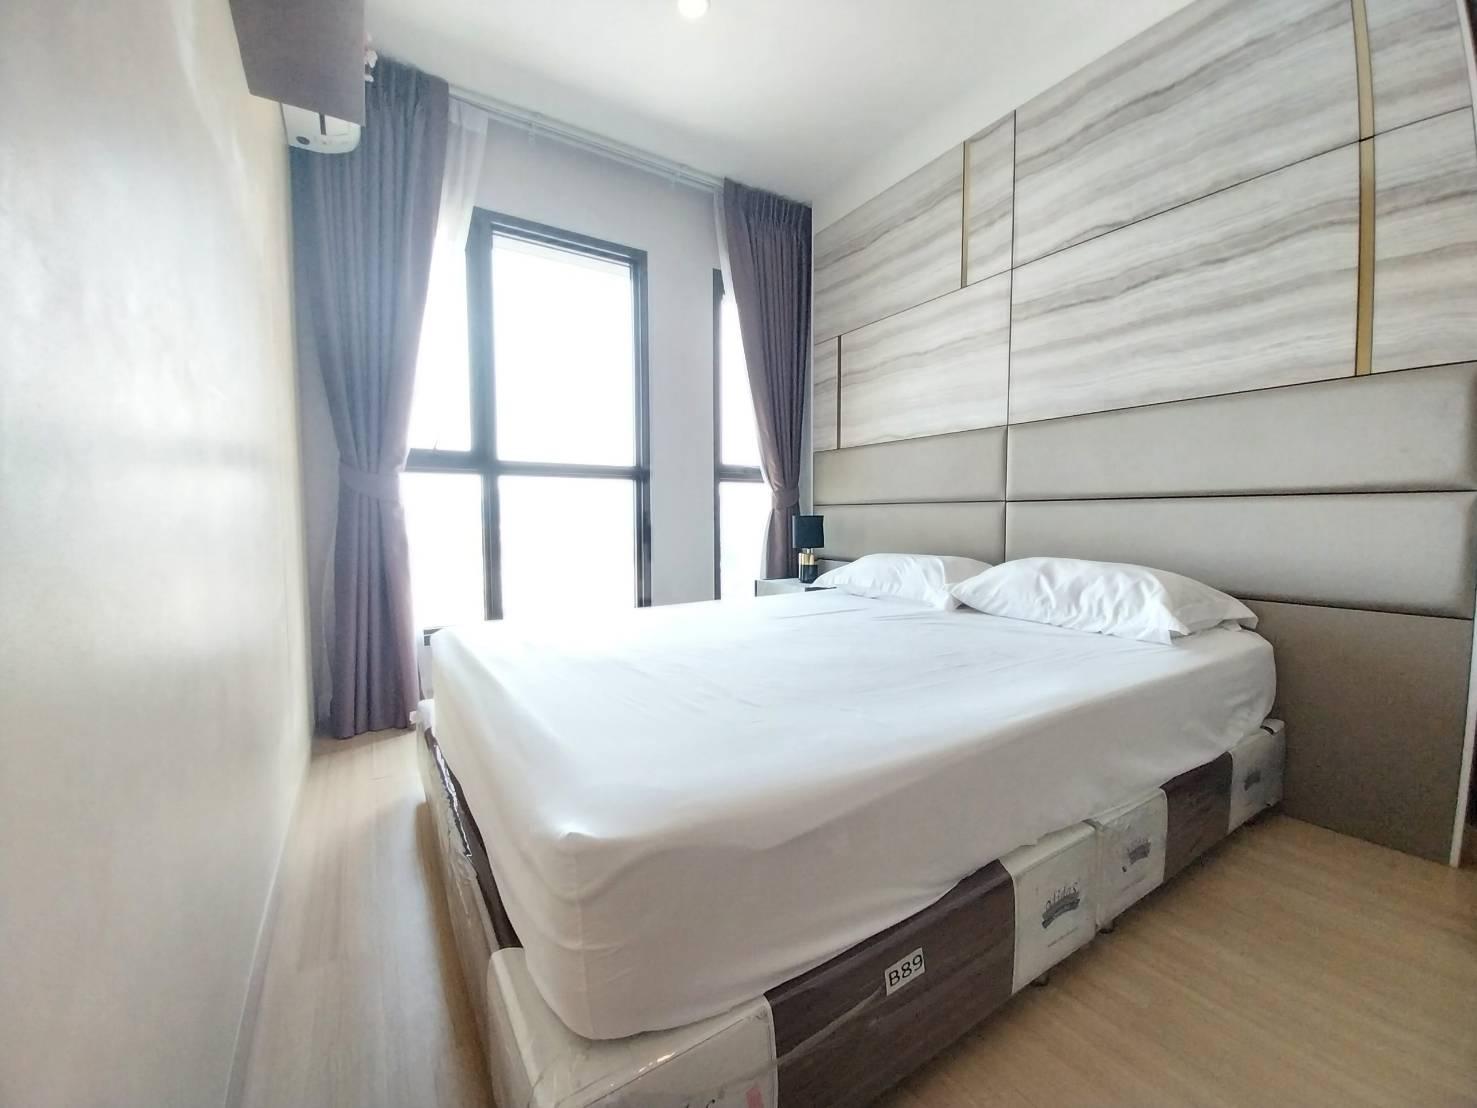 เช่าคอนโด ลุมพินี สวีท ดินแดง – ราชปรารภ คอนโดมิเนียม - Condo Rental Lumpini Suite Din Daeng – Ratchaprarop condominium - 2278842